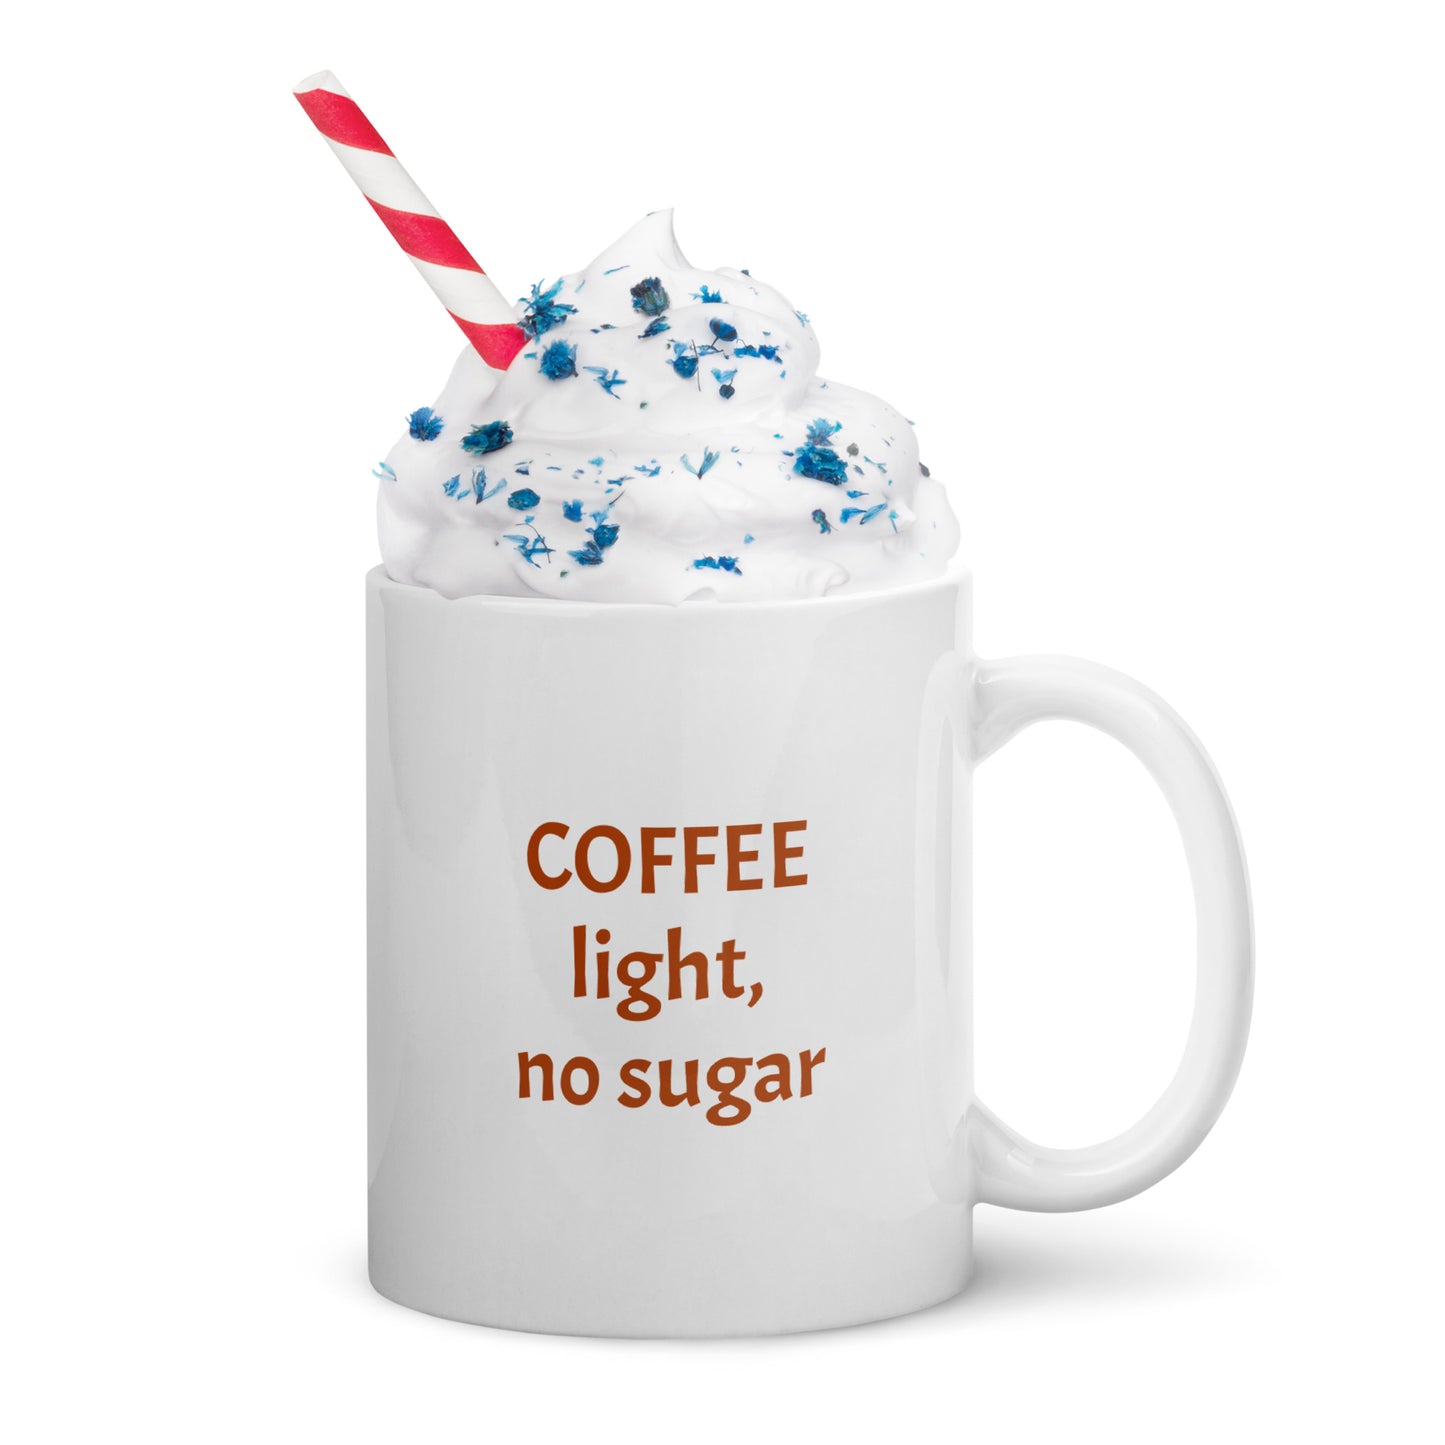 Coffee light, no sugar, glossy mug